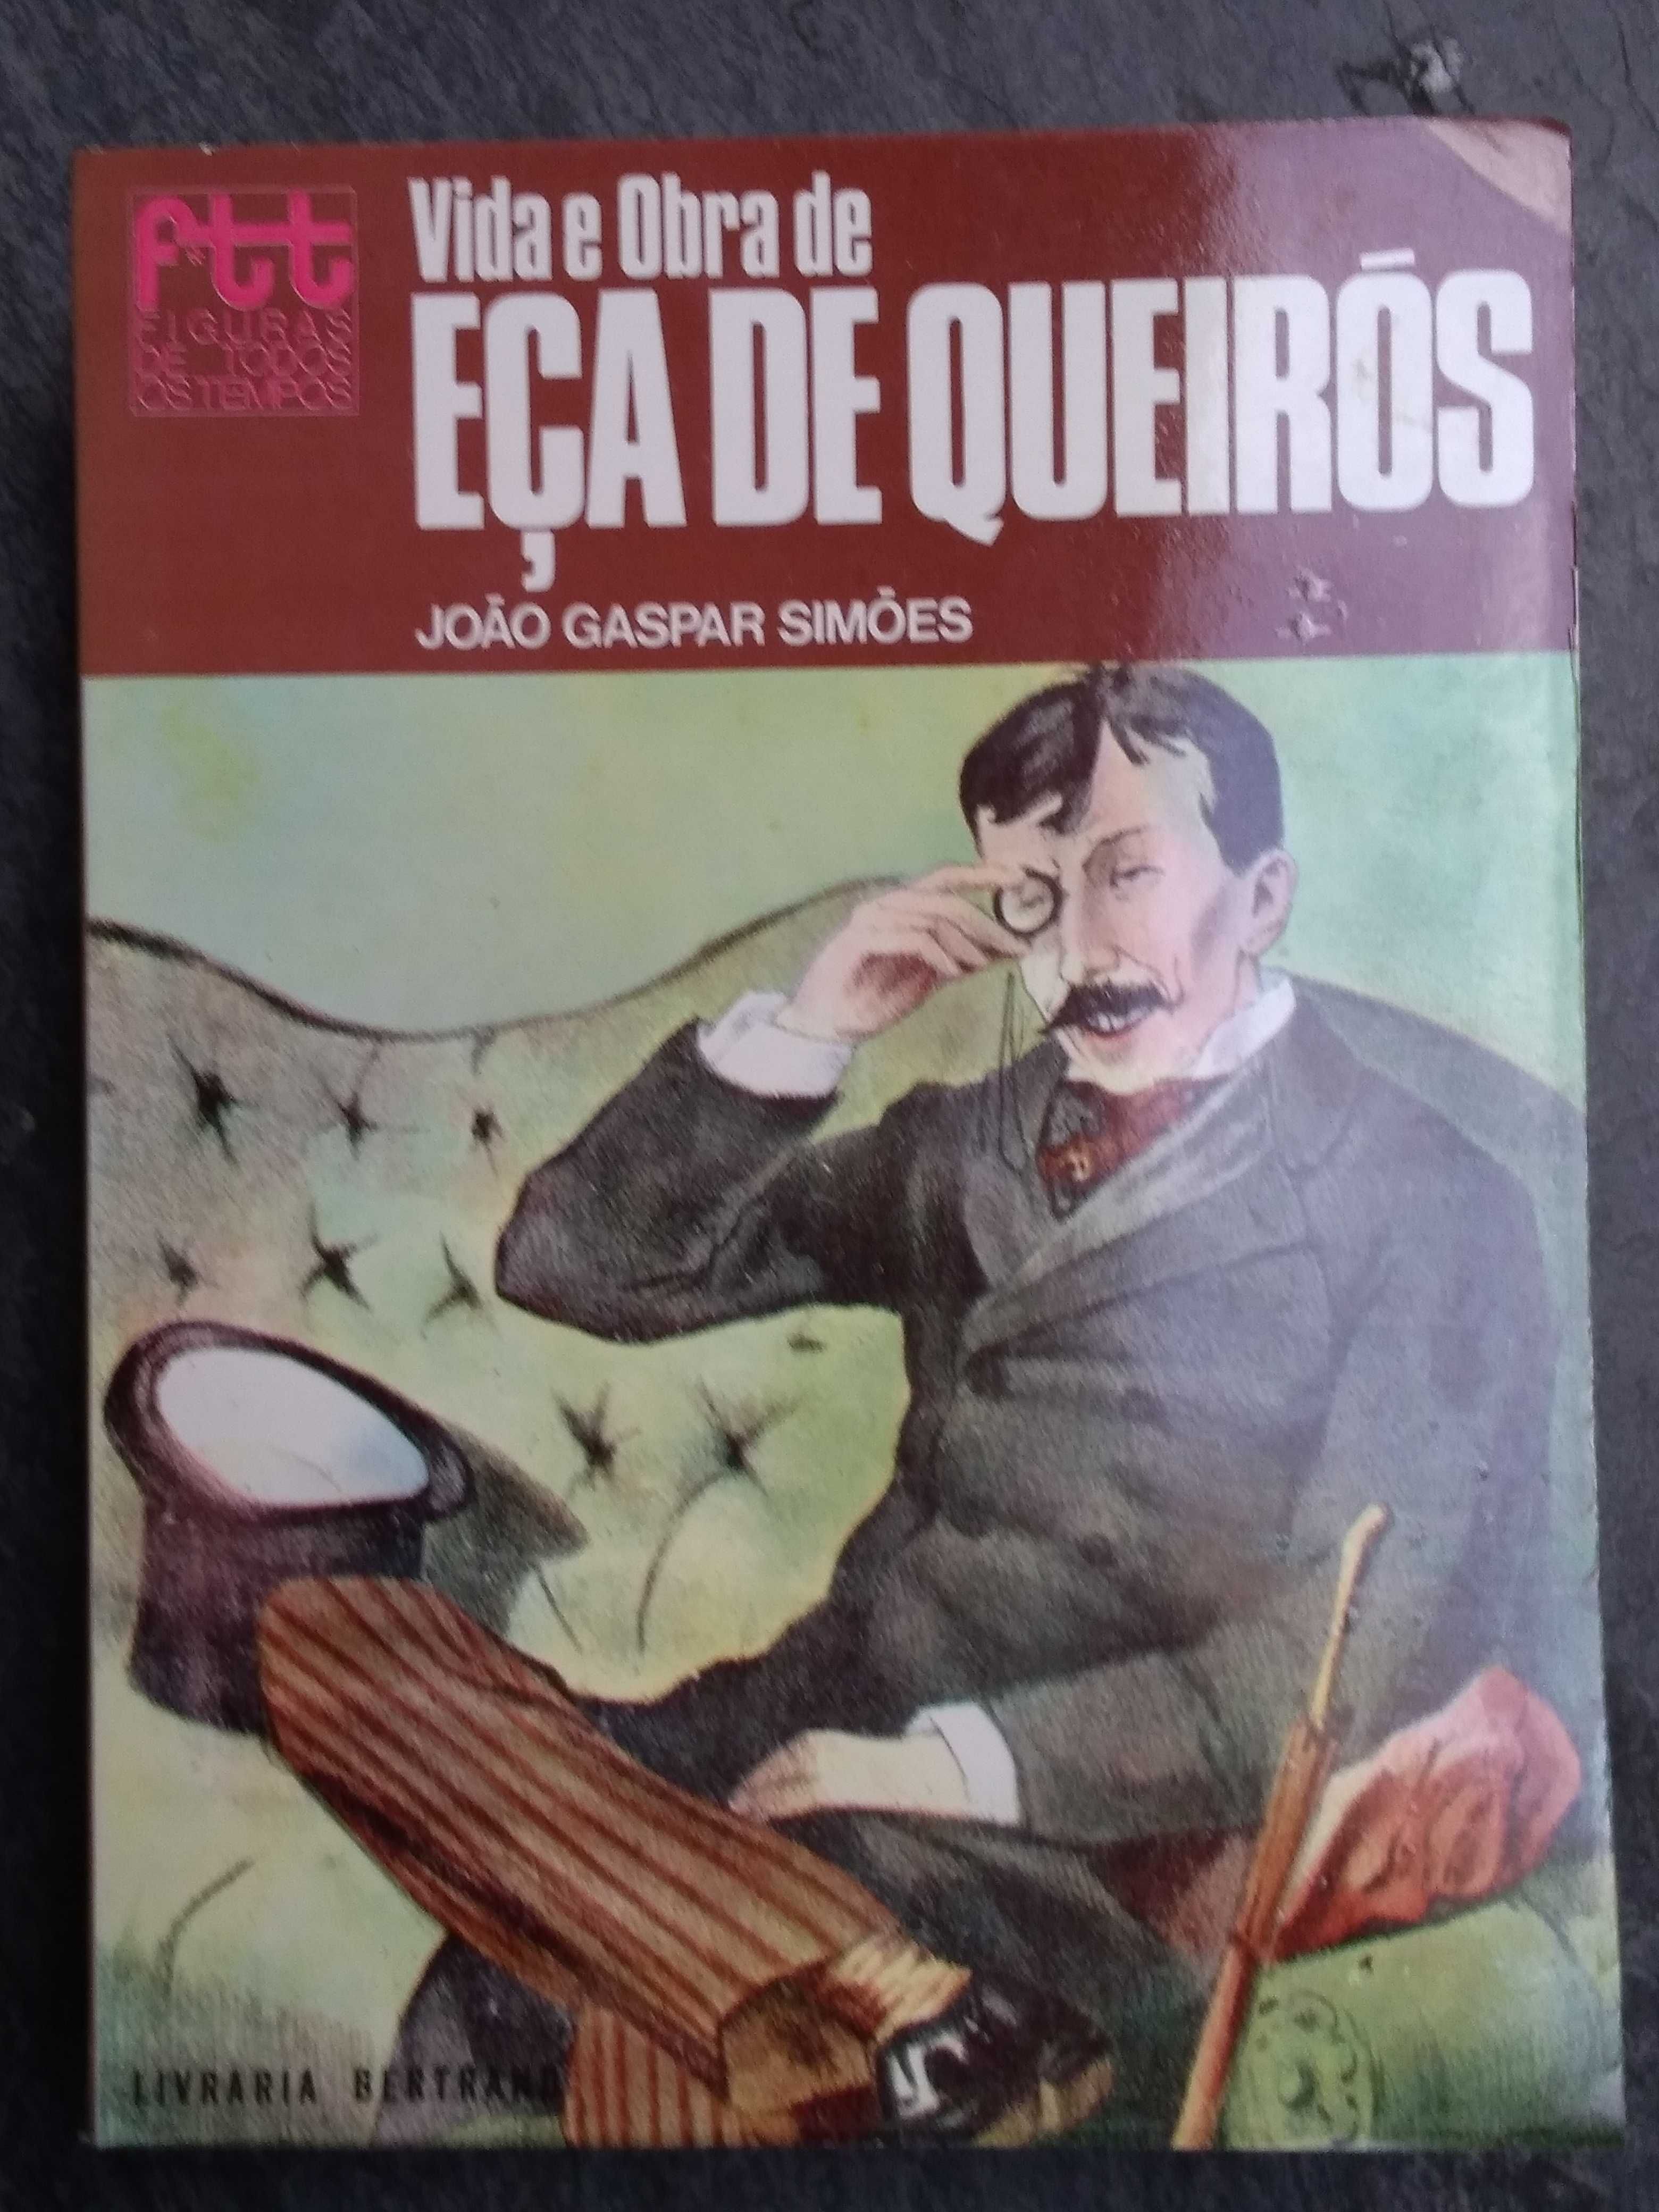 Vida e Obra de Eça de Queirós, por João Gaspar Simões